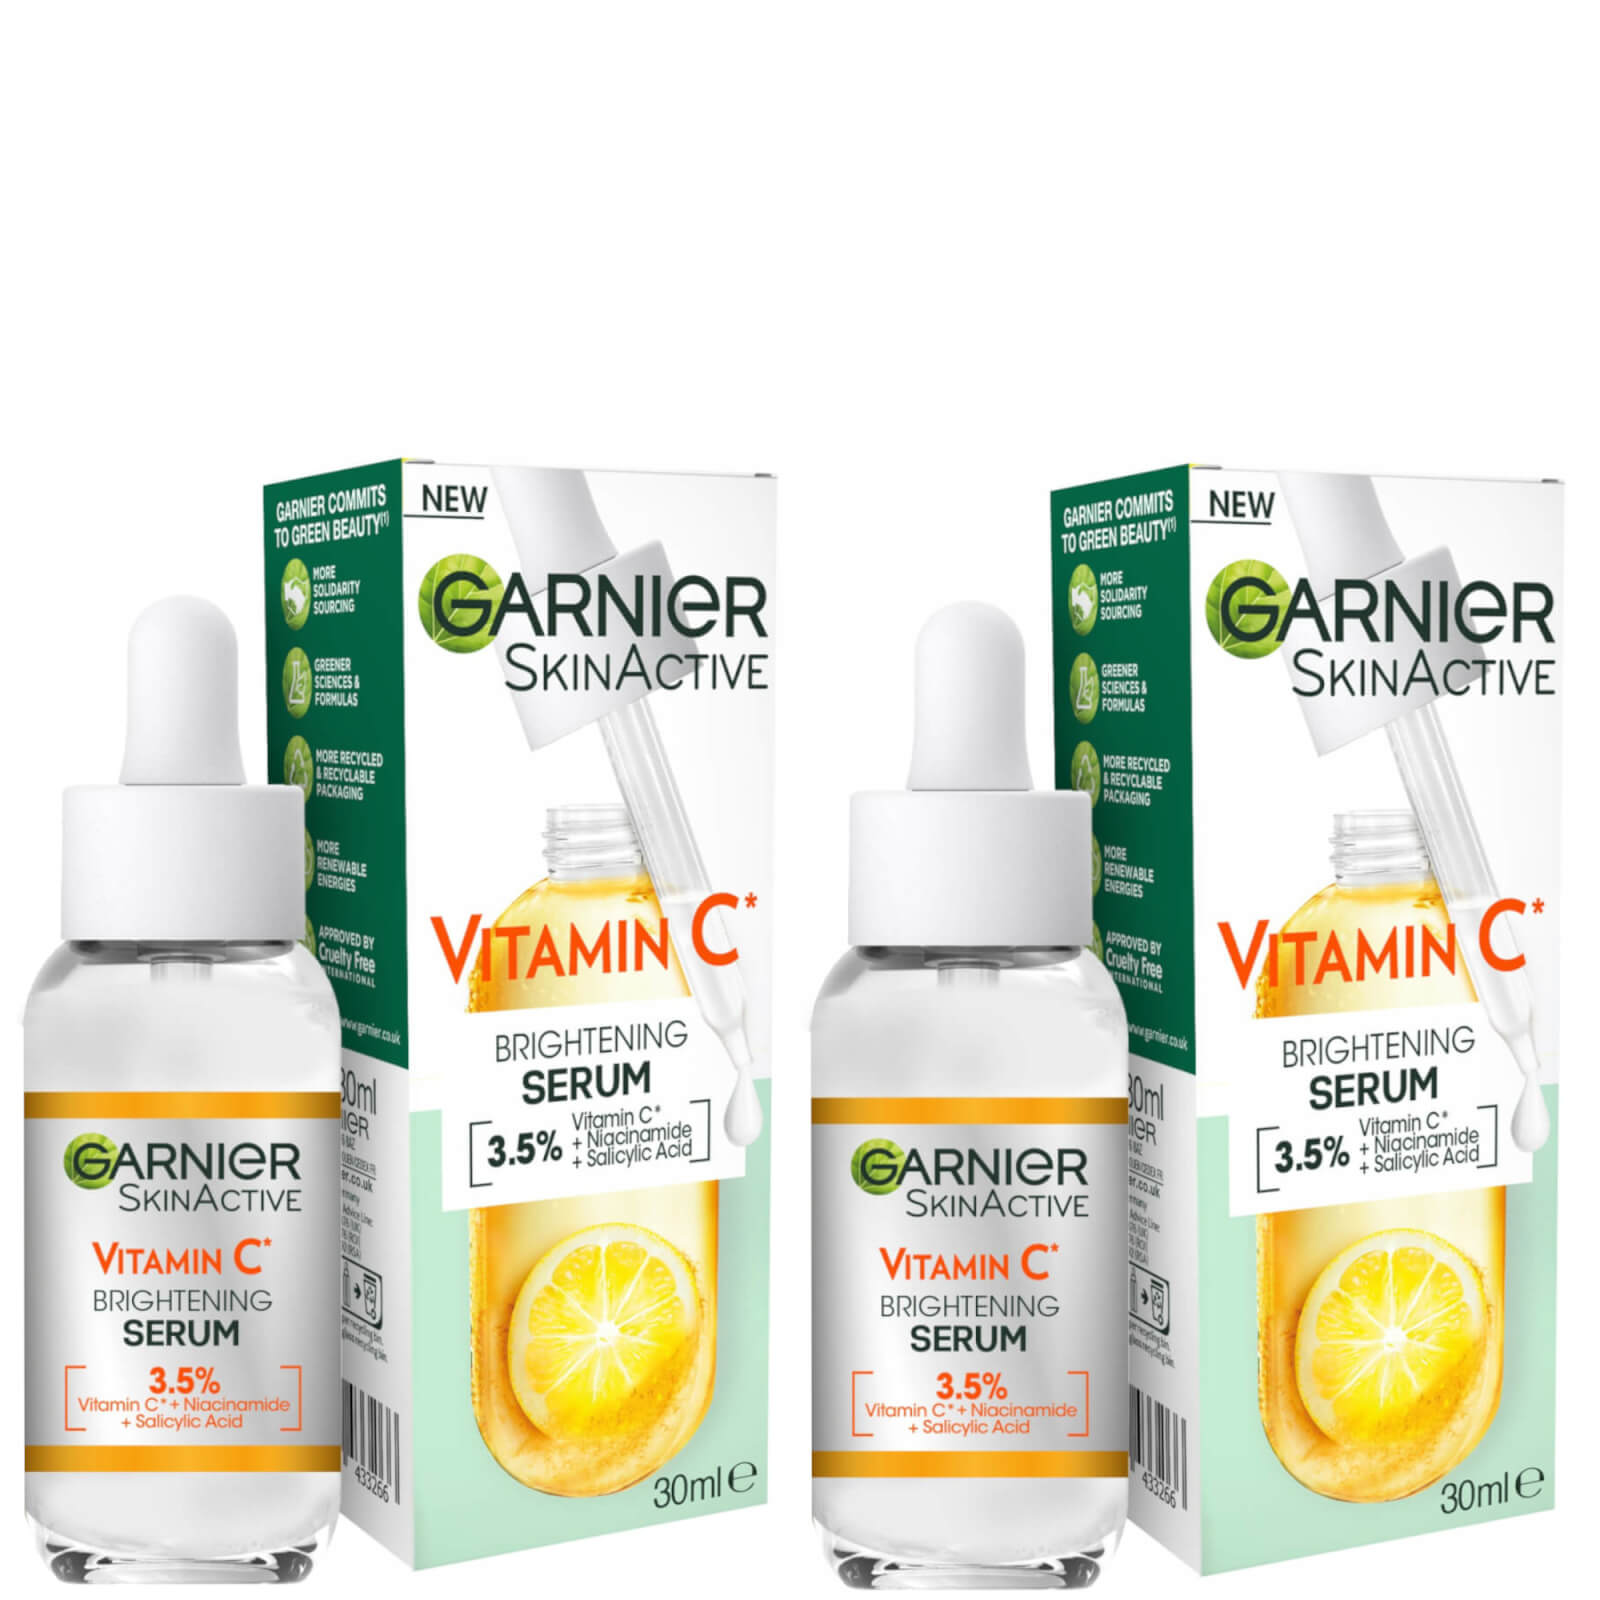 Garnier Vitamin C Brightening and Anti Dark Spot Serum Duo product